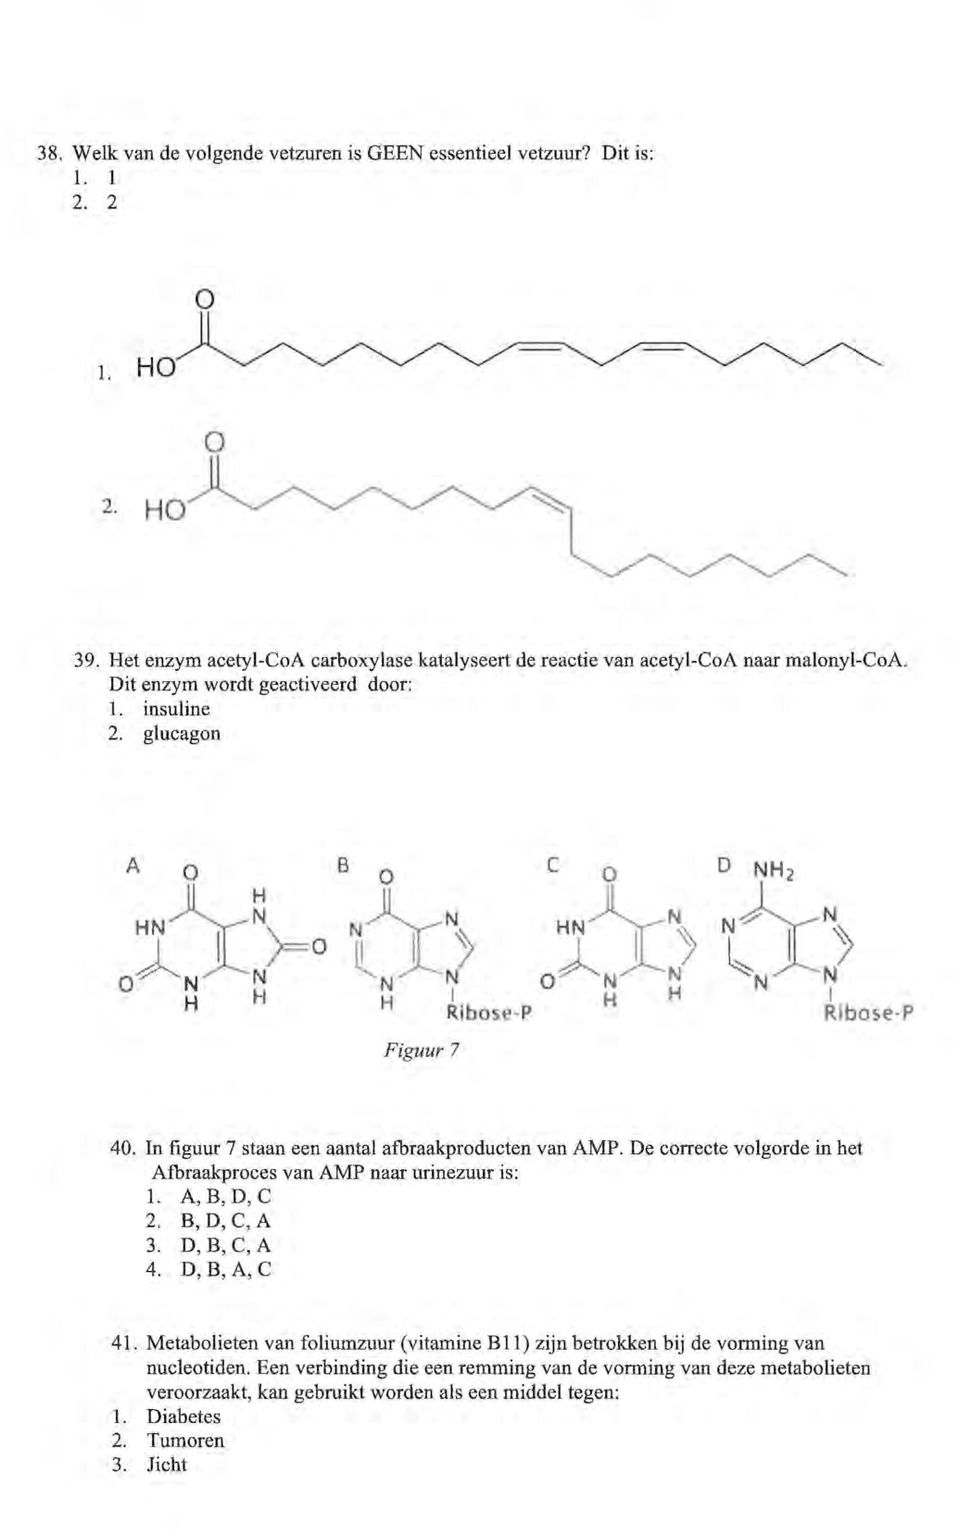 .jl) N N I Rlbose P 40. In figuur 7 staan een aantal afbraakproducten van AMP. De correcte volgorde in het Afbraakproces van AMP naar urinezuur is: 1. A, B, D, C 2. B,D,C,A 3.